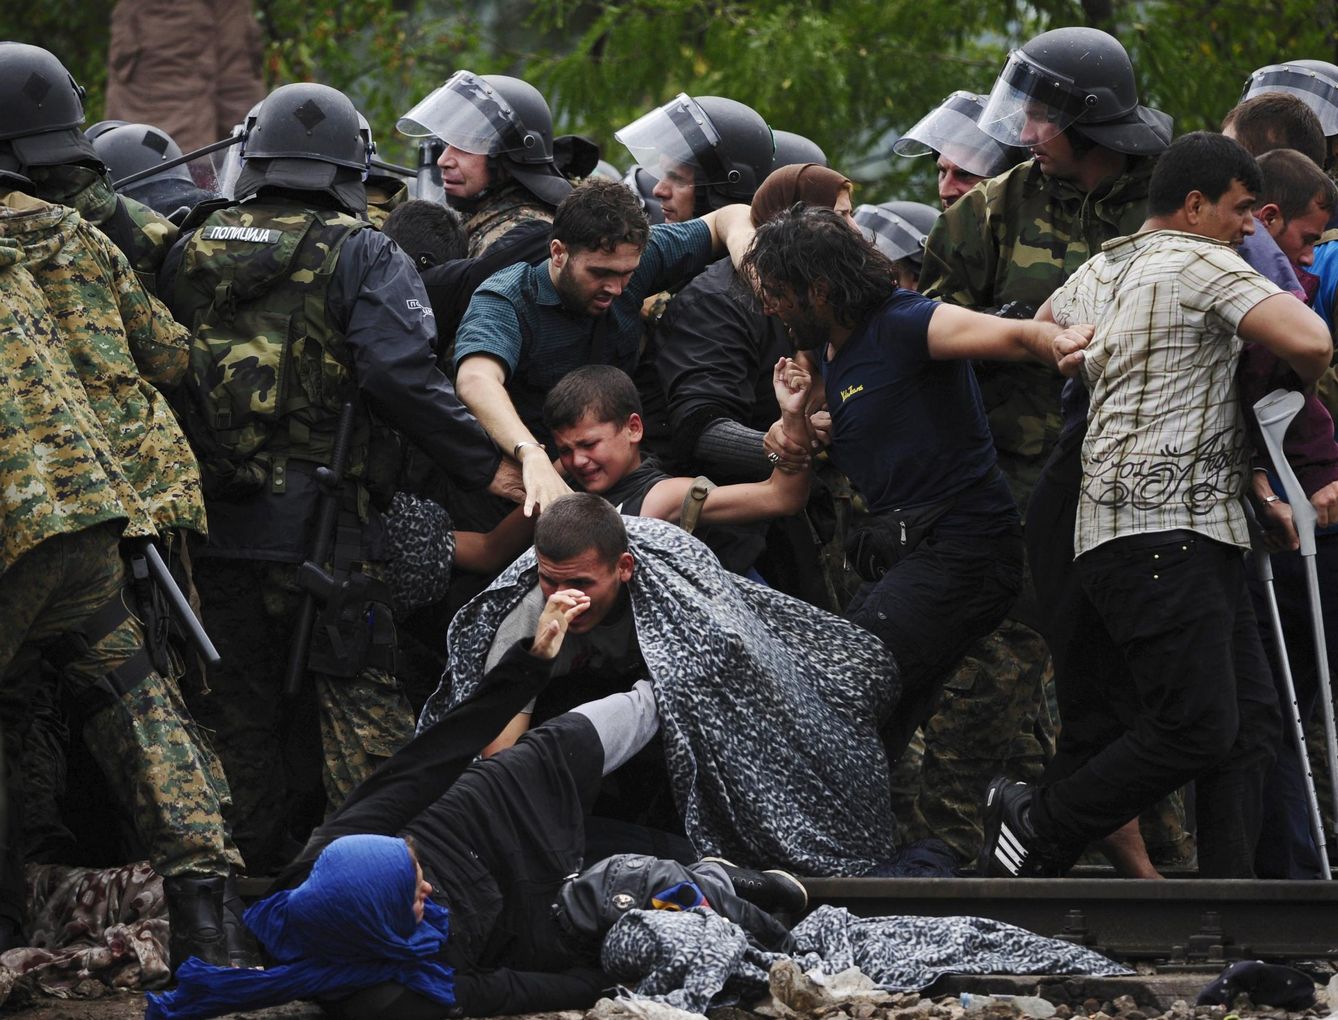 Refugiados intentan atravesar el cordón policial en Gevgelija, Macedonia (Reuters).